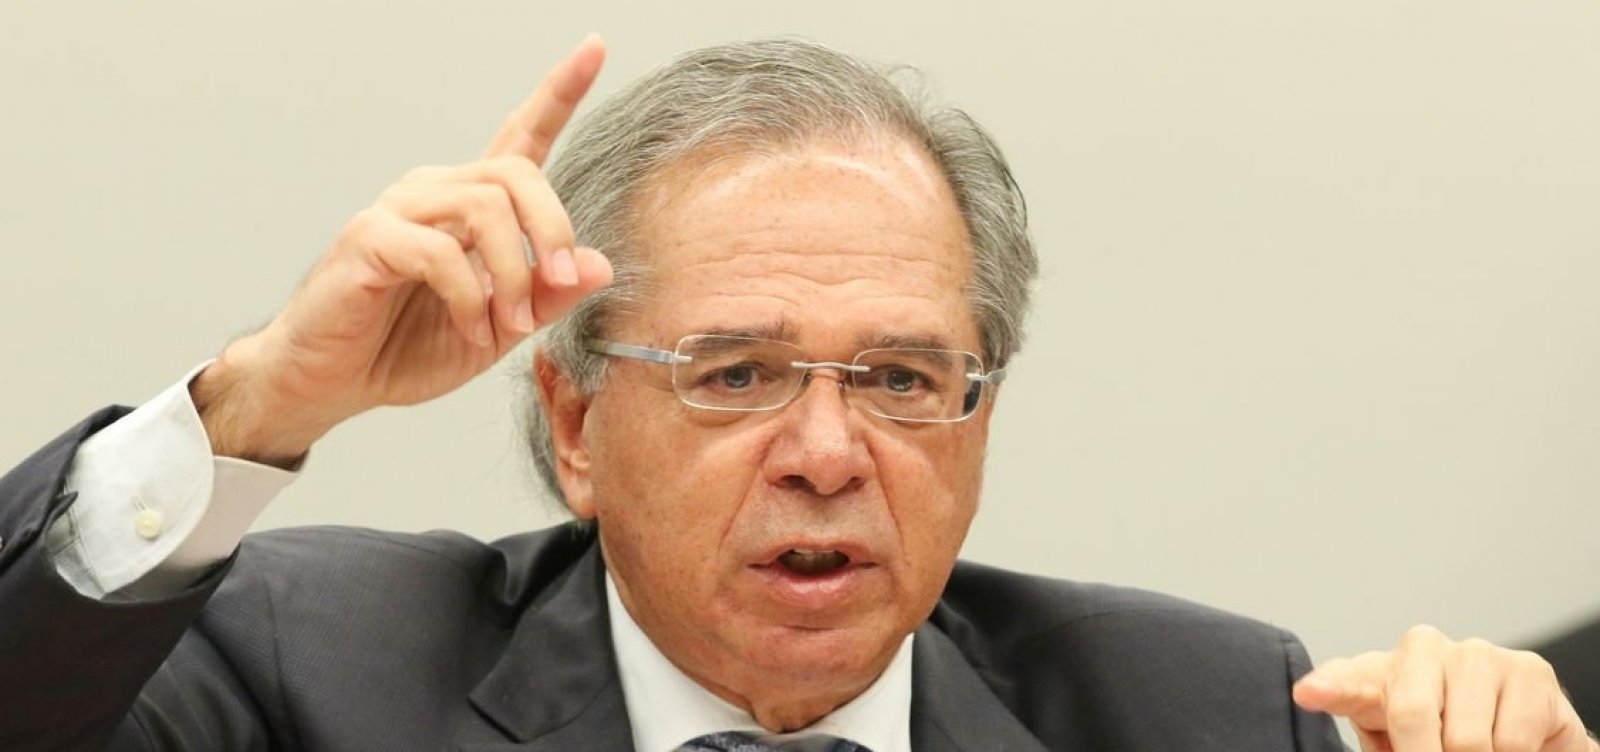 'Estamos despedalando', diz Guedes sobre restituição de R$ 3 bilhões da Caixa